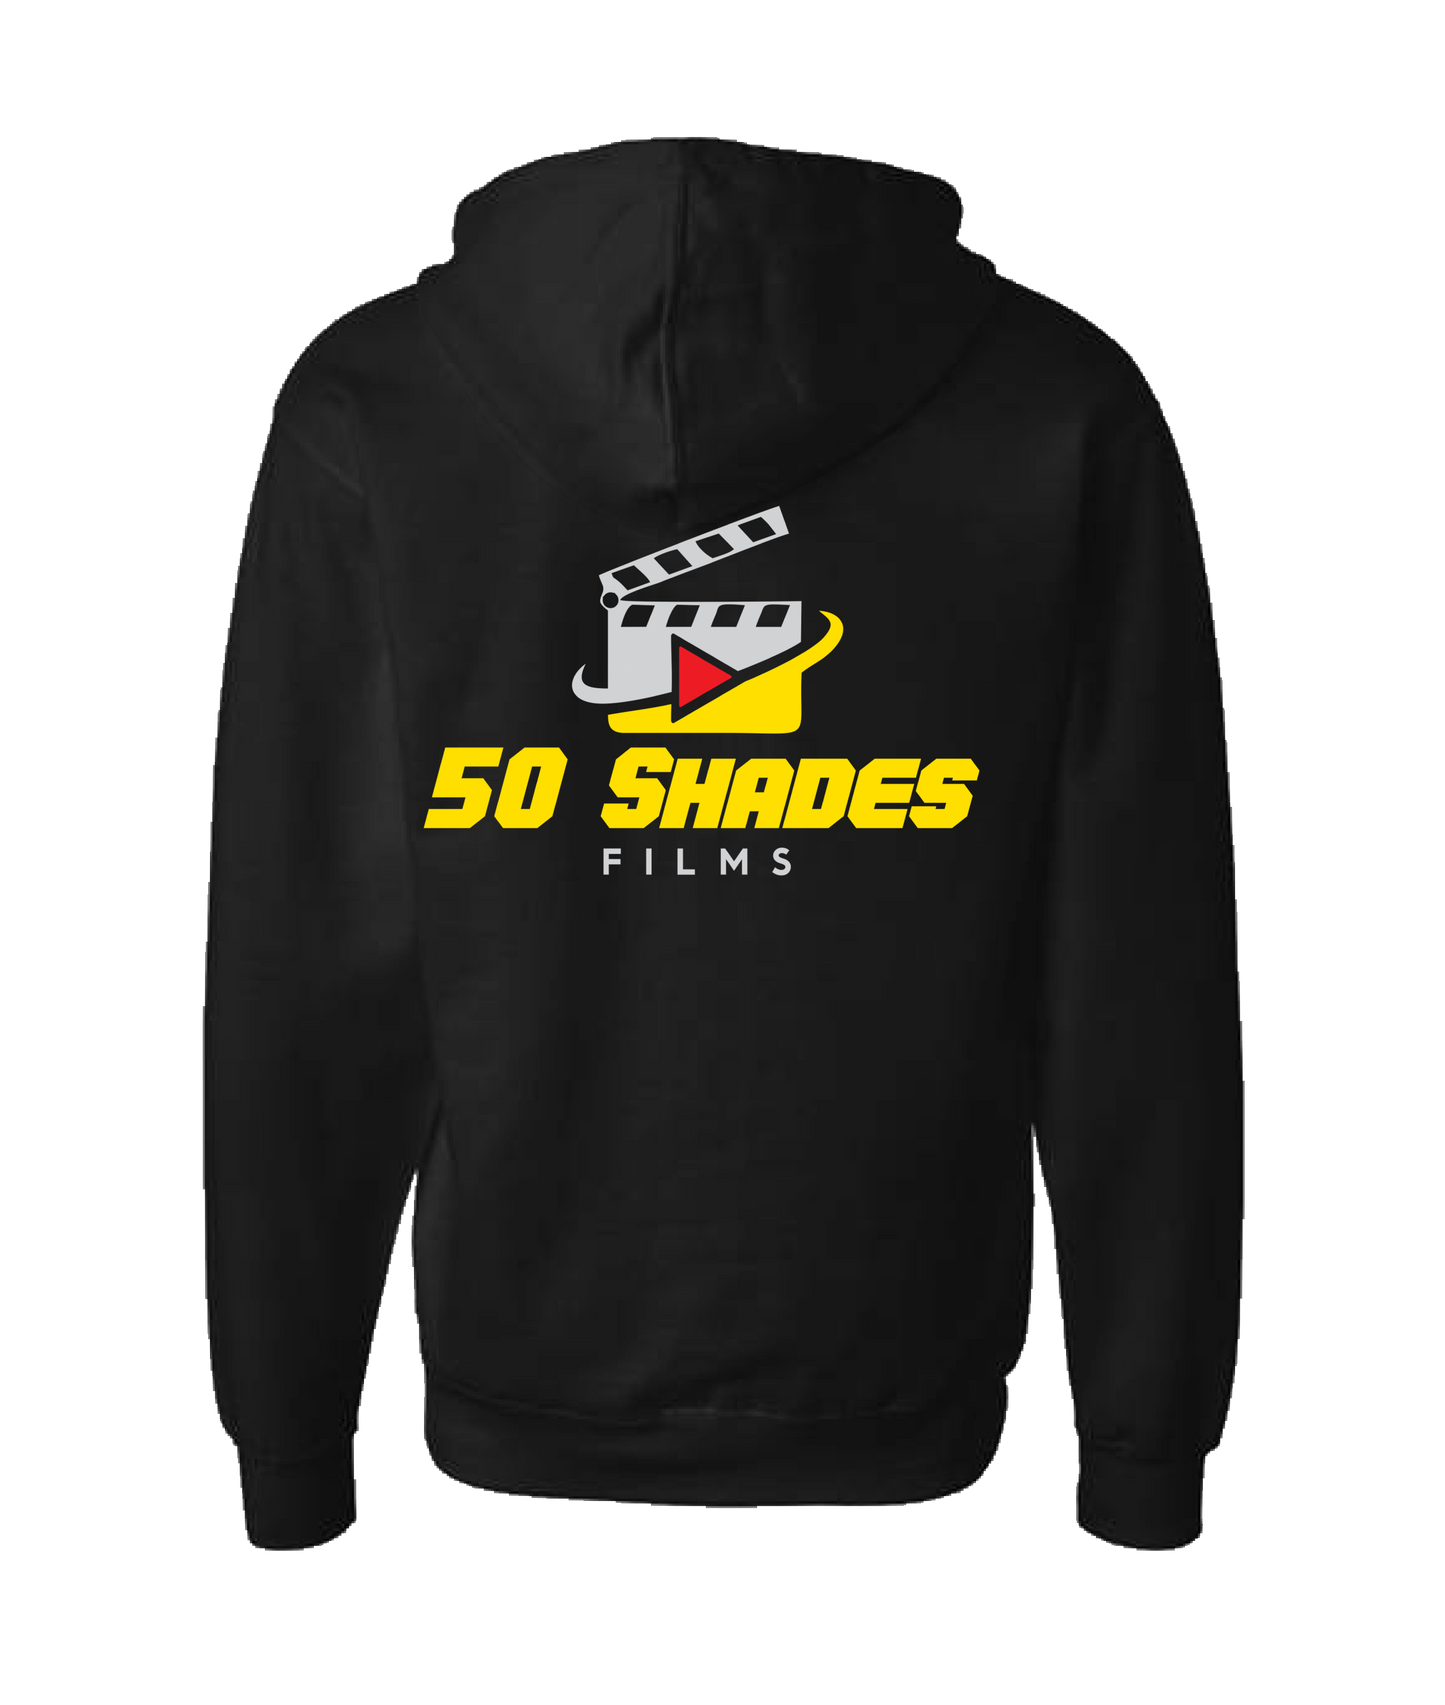 50 Shades Films - LOGO 1 - Black Zip Up Hoodie